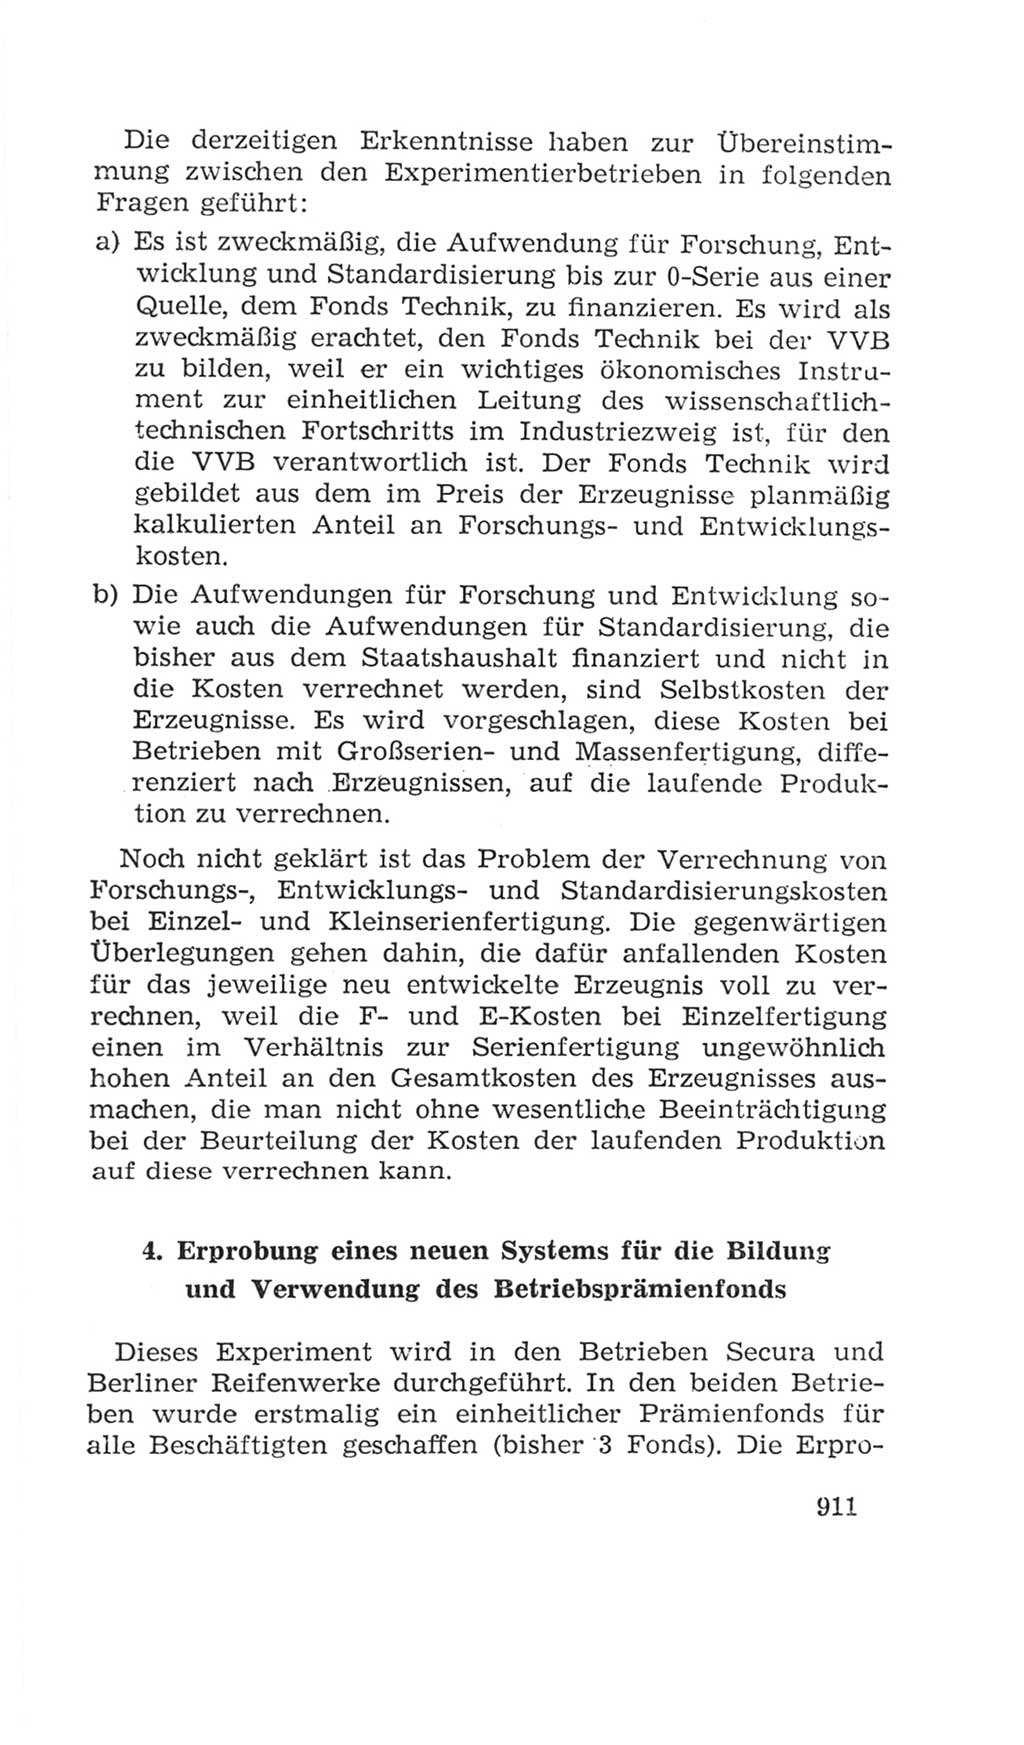 Volkskammer (VK) der Deutschen Demokratischen Republik (DDR), 4. Wahlperiode 1963-1967, Seite 911 (VK. DDR 4. WP. 1963-1967, S. 911)